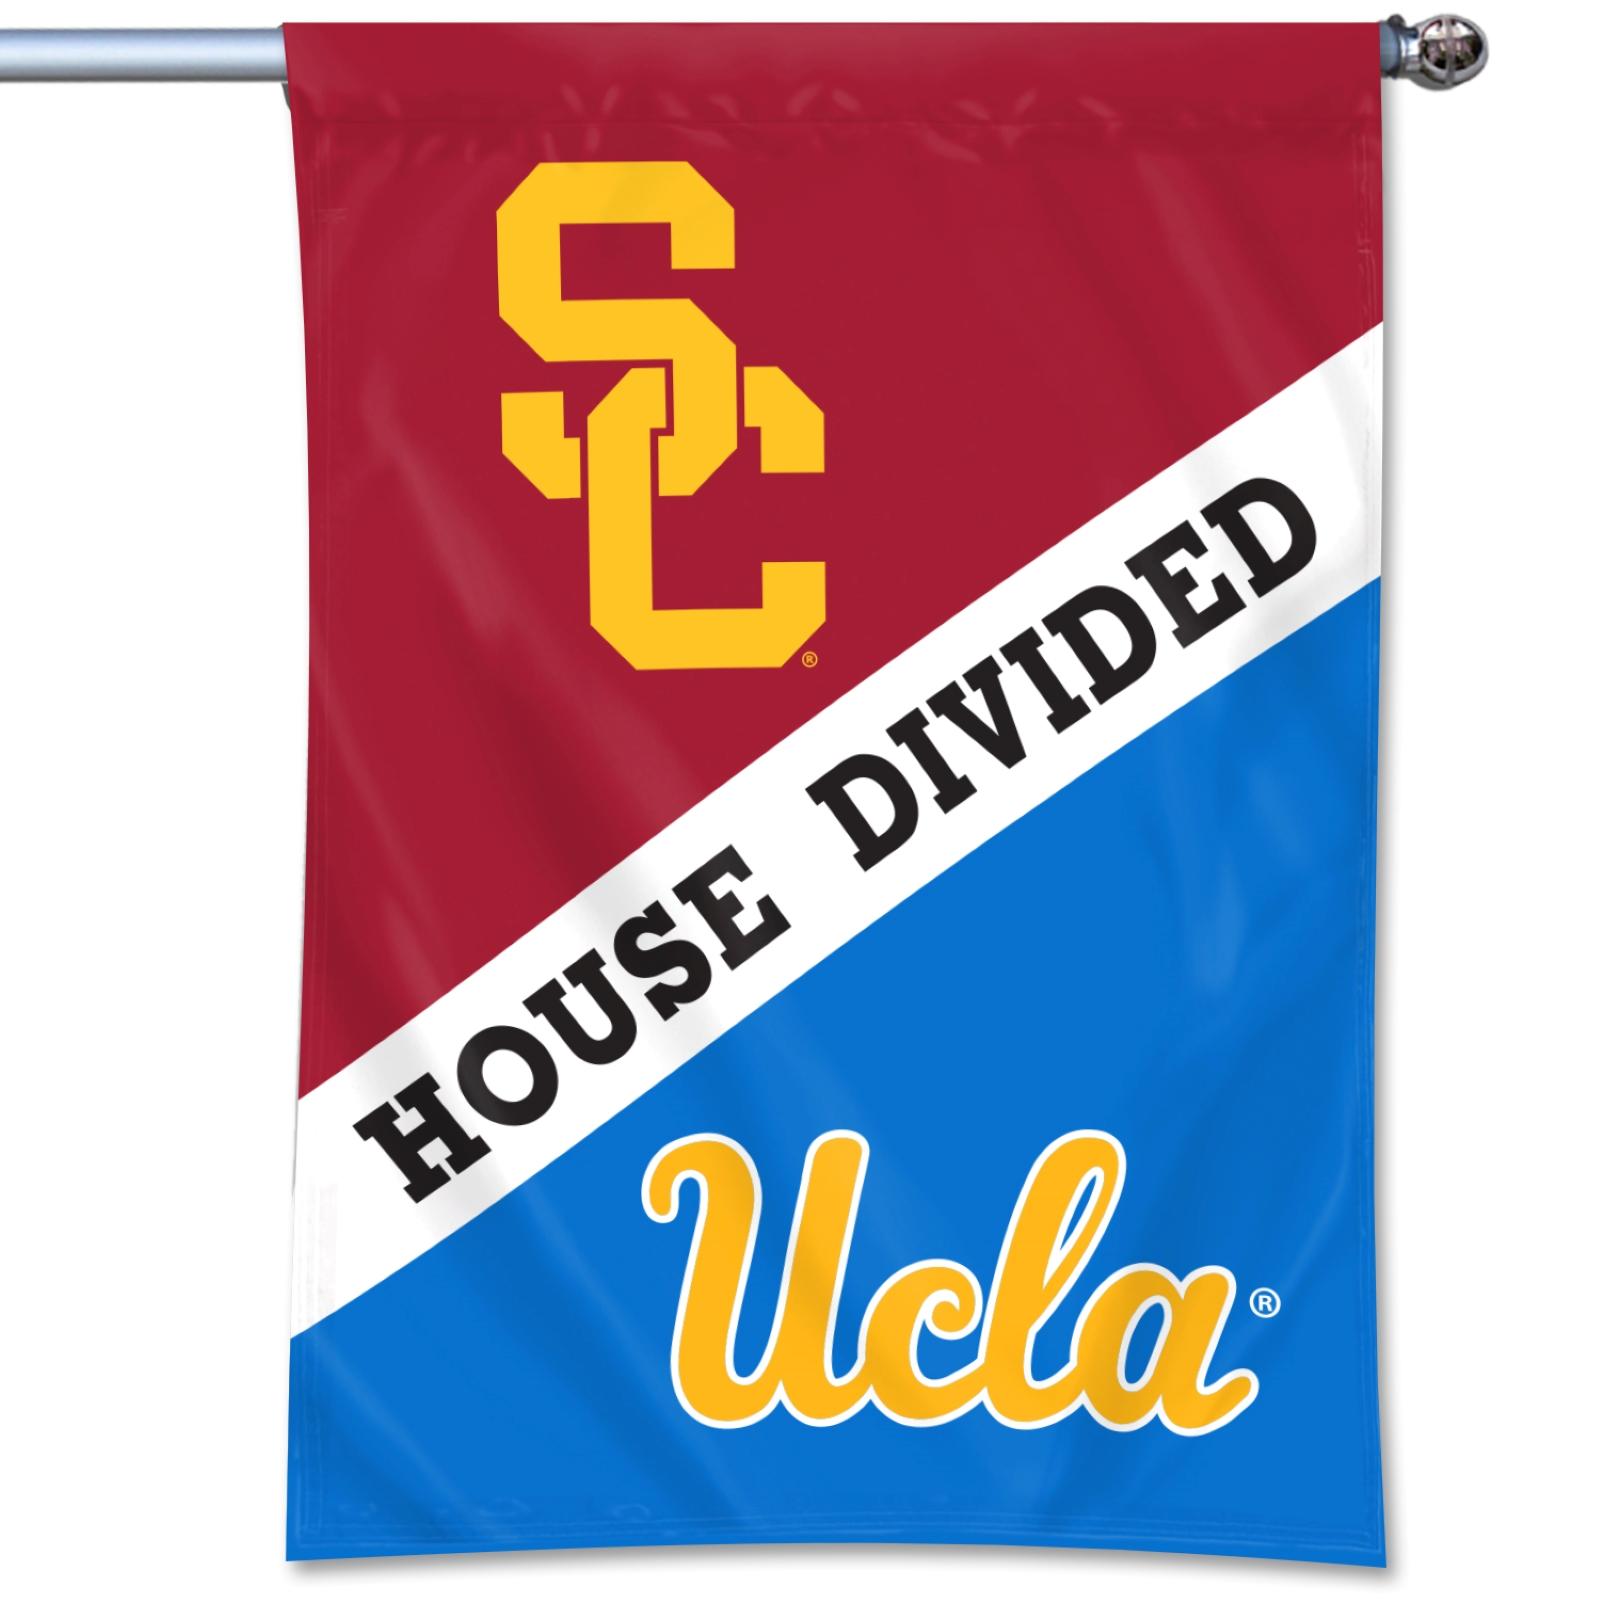 USC UCLA House Divided Flag By UBF image01